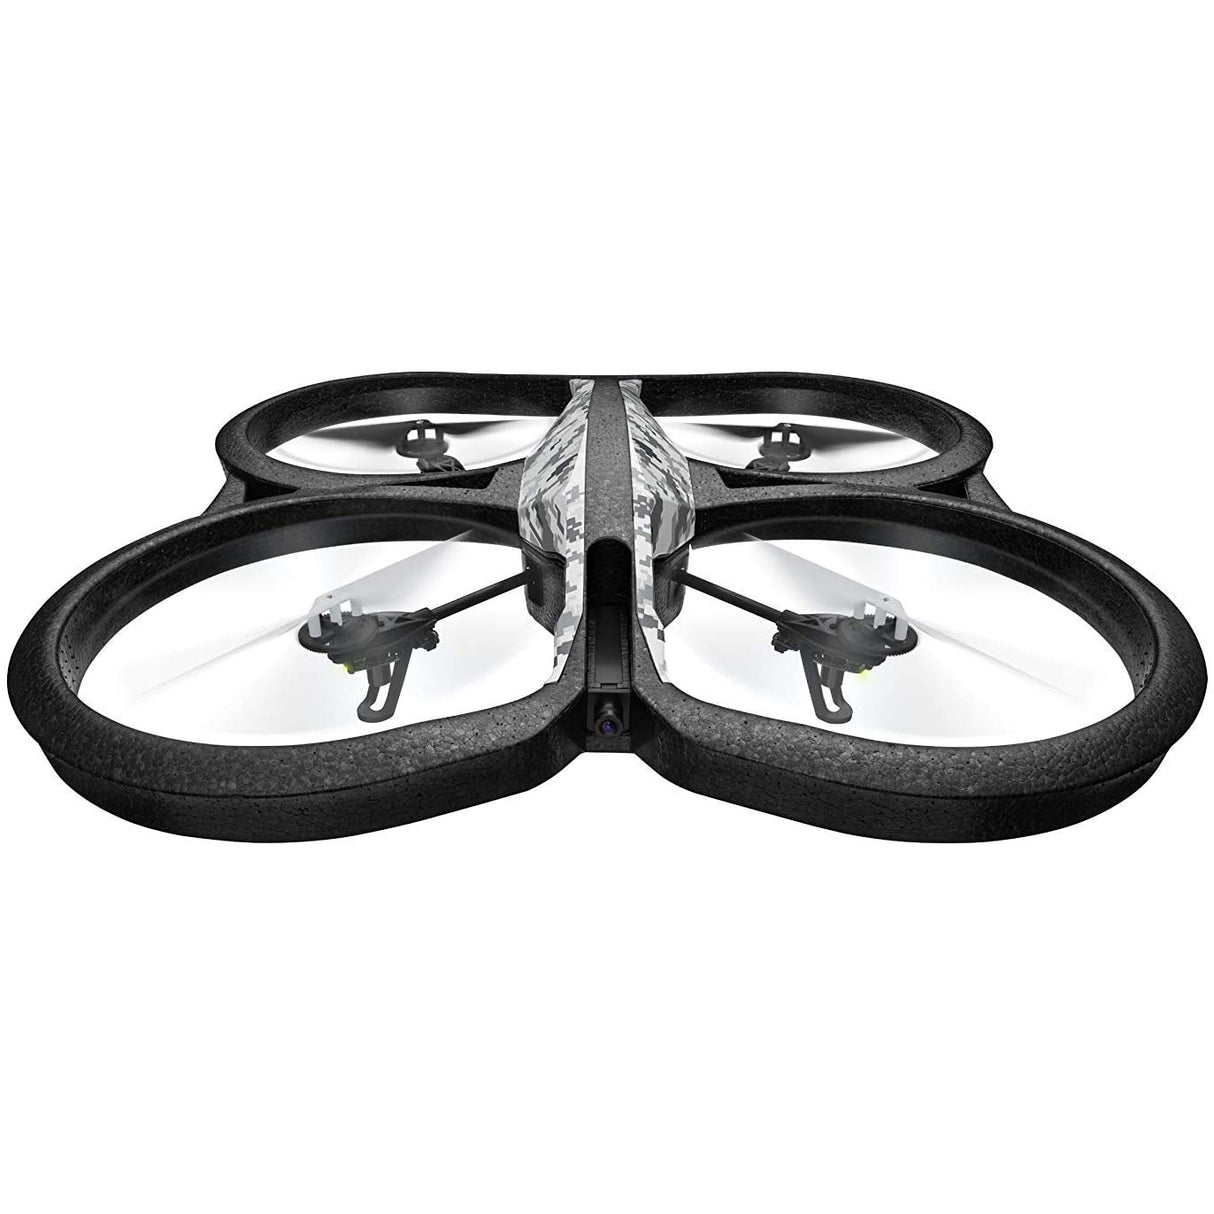 Parrot AR Drone 2.0 Elite Edition Quadricopter